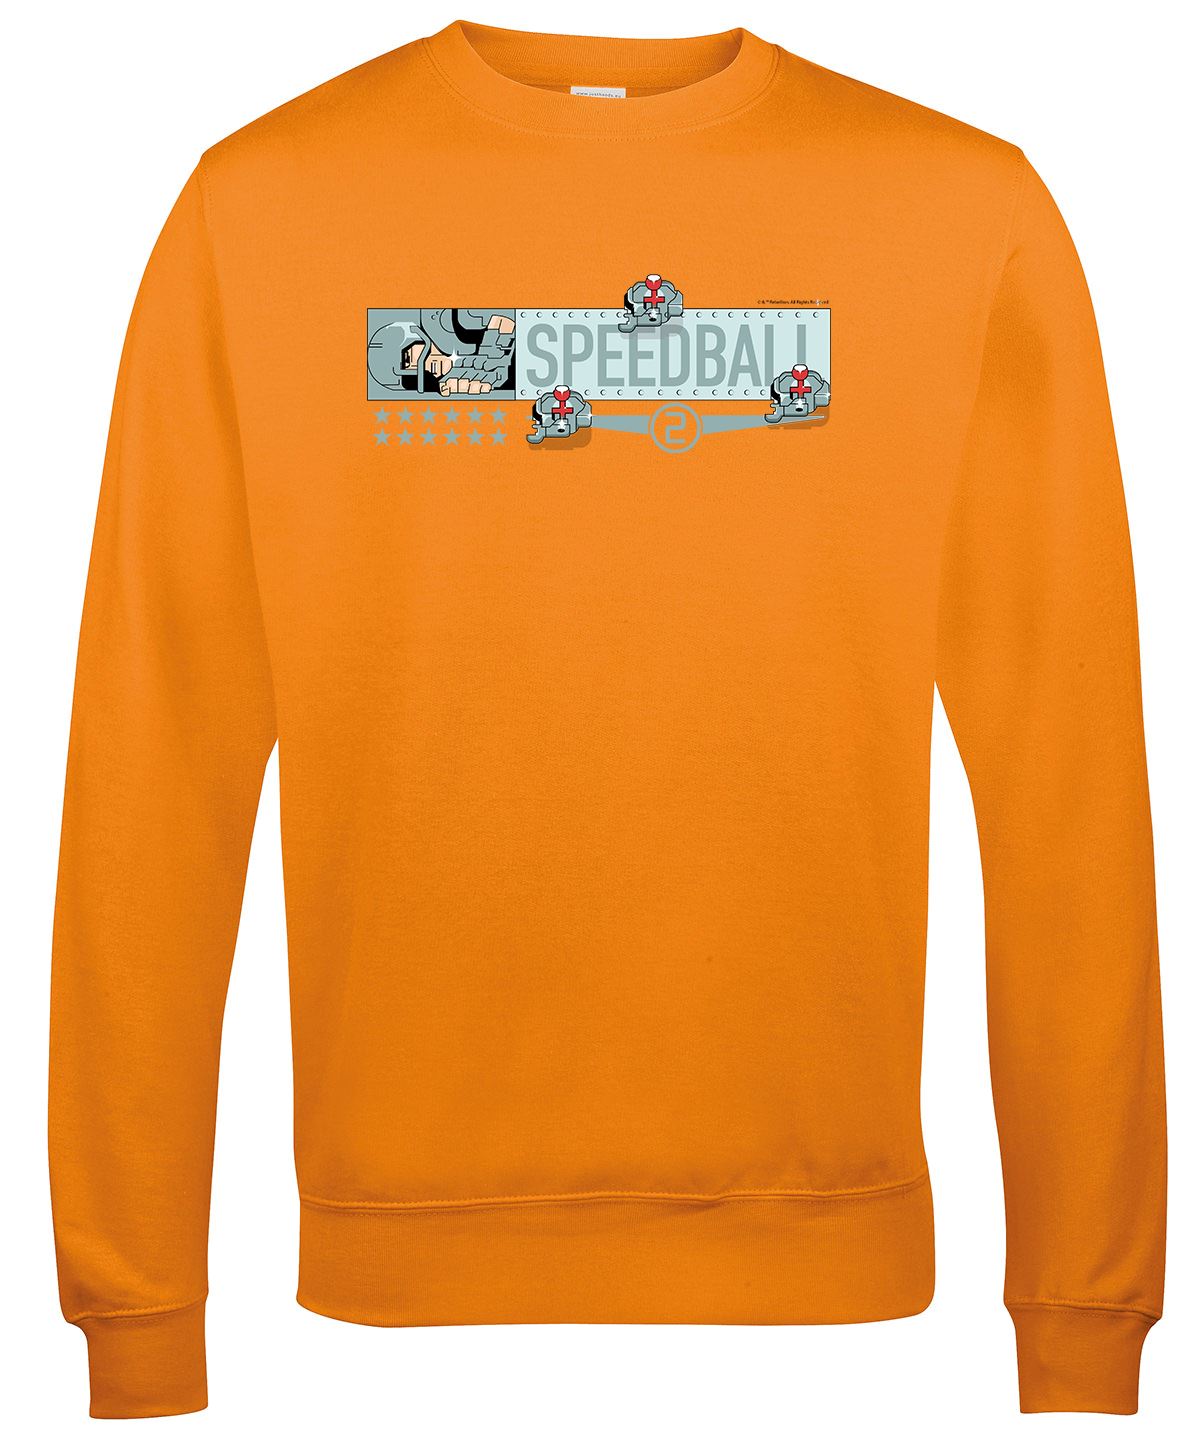 Speedball 2 Ice Cream Ice Cream Retro Gaming Sweatshirt Sweatshirt Seven Squared Small Orange Crush 